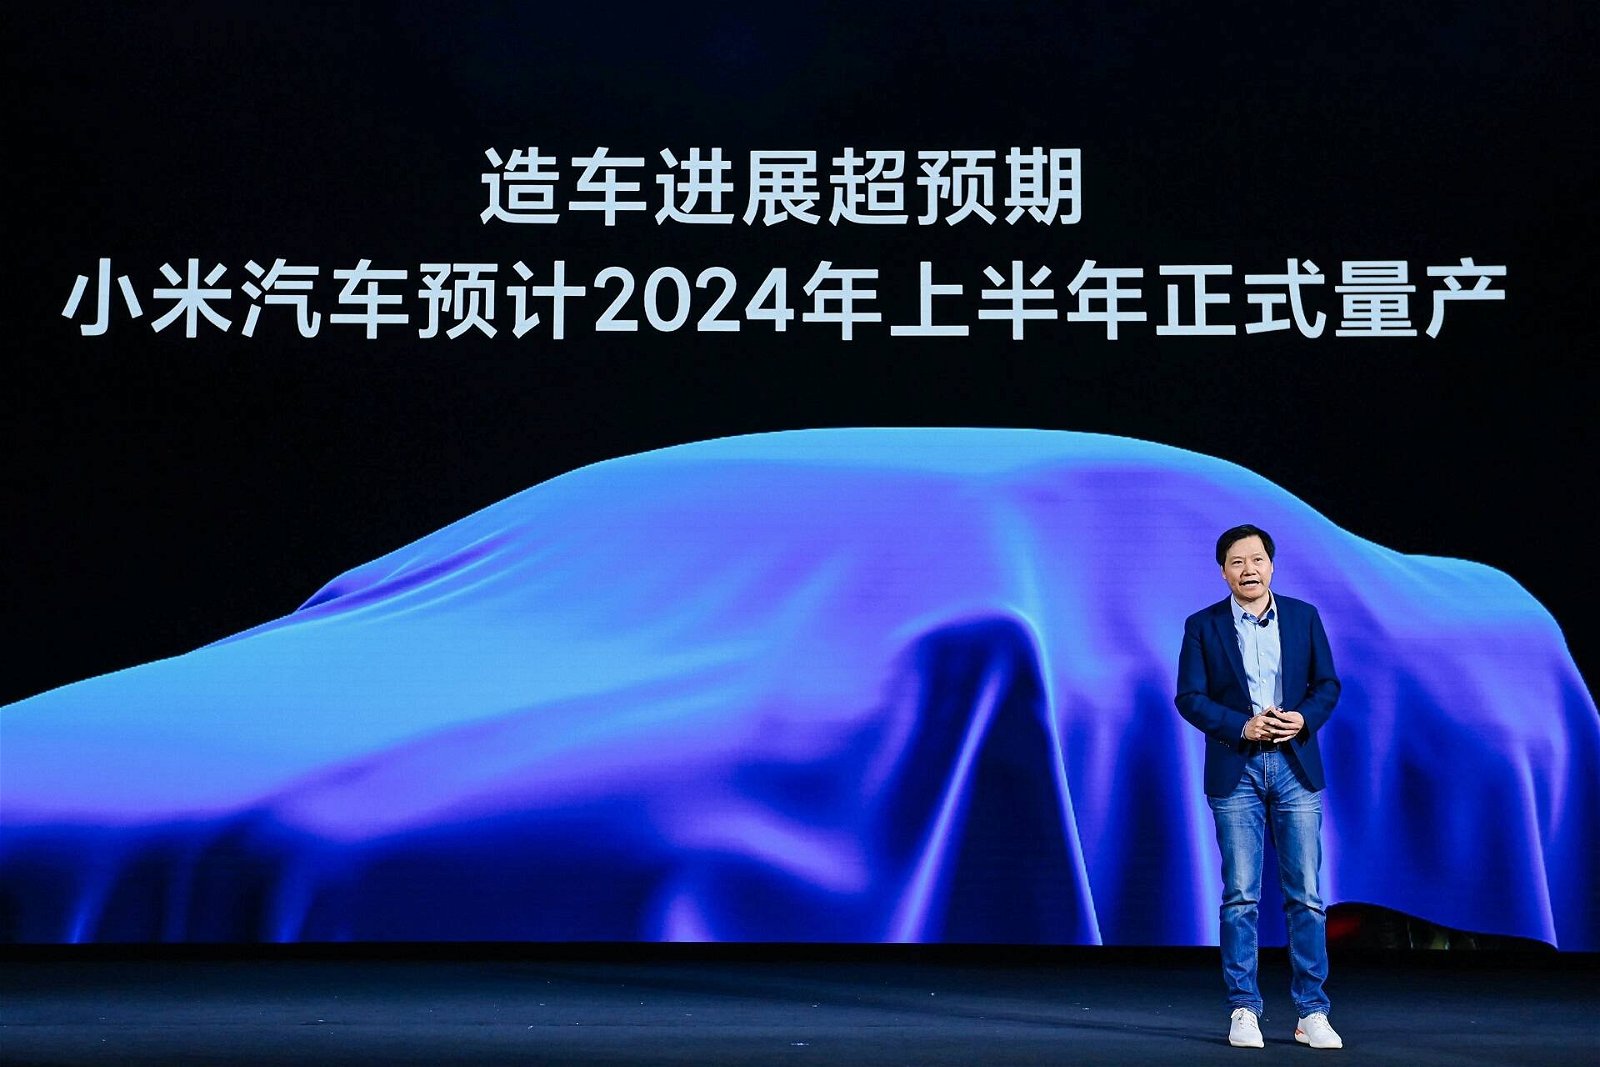 Immagine di Xiaomi punta alla produzione di 300.000 auto elettriche all'anno